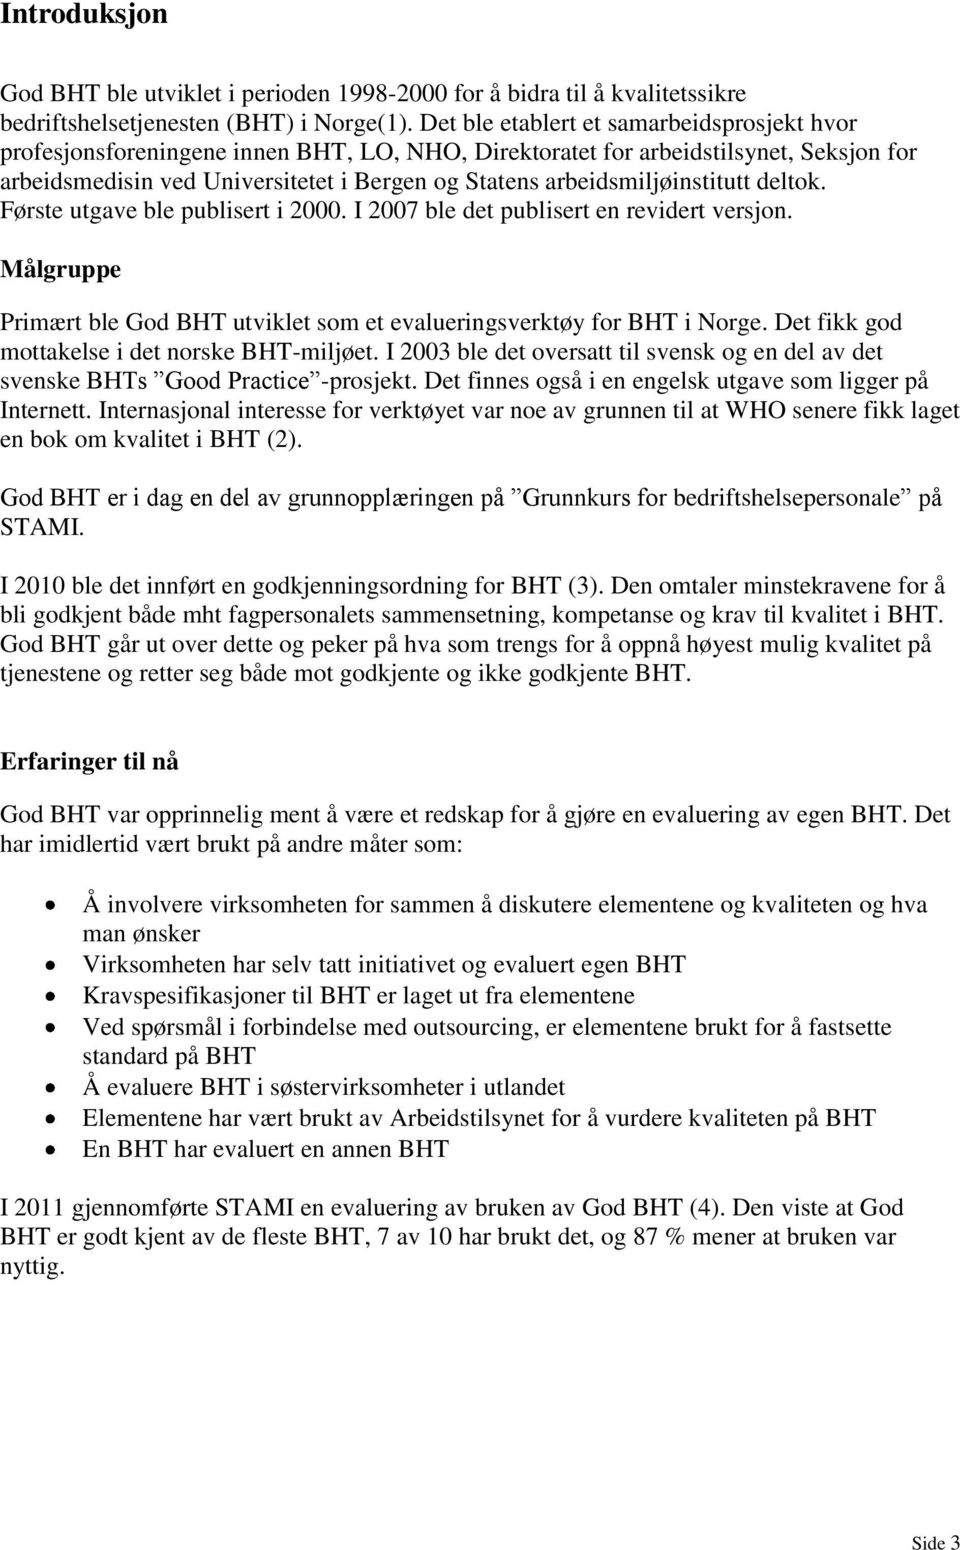 arbeidsmiljøinstitutt deltok. Første utgave ble publisert i 2000. I 2007 ble det publisert en revidert versjon. Målgruppe Primært ble God BHT utviklet som et evalueringsverktøy for BHT i Norge.